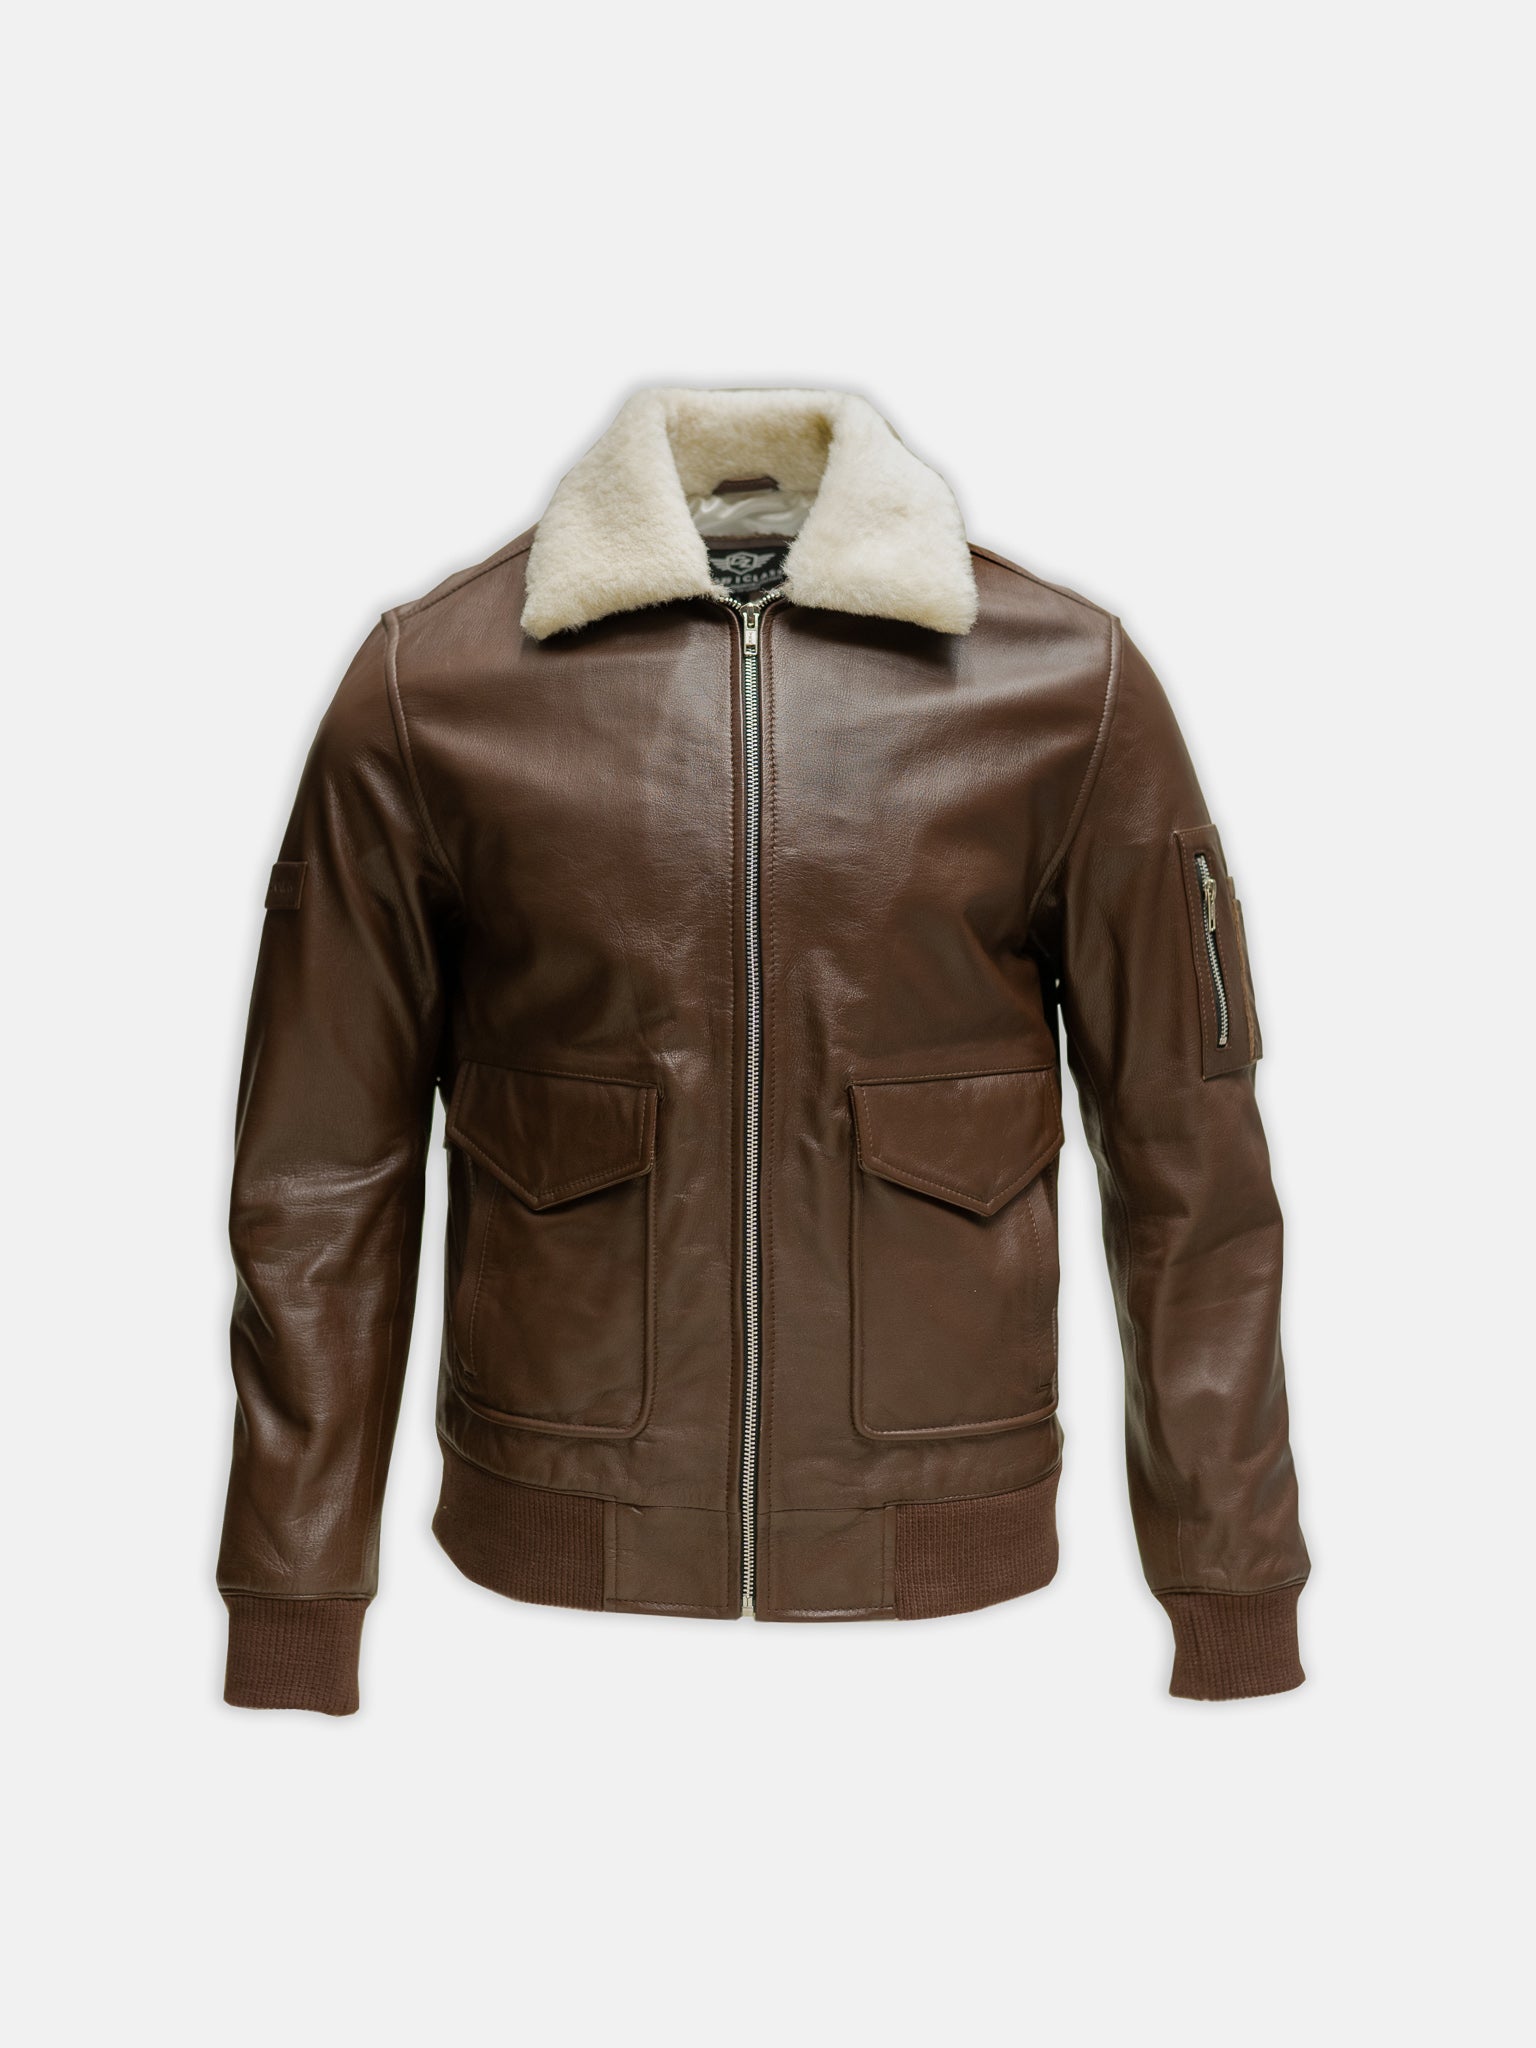 Leather flying jacket